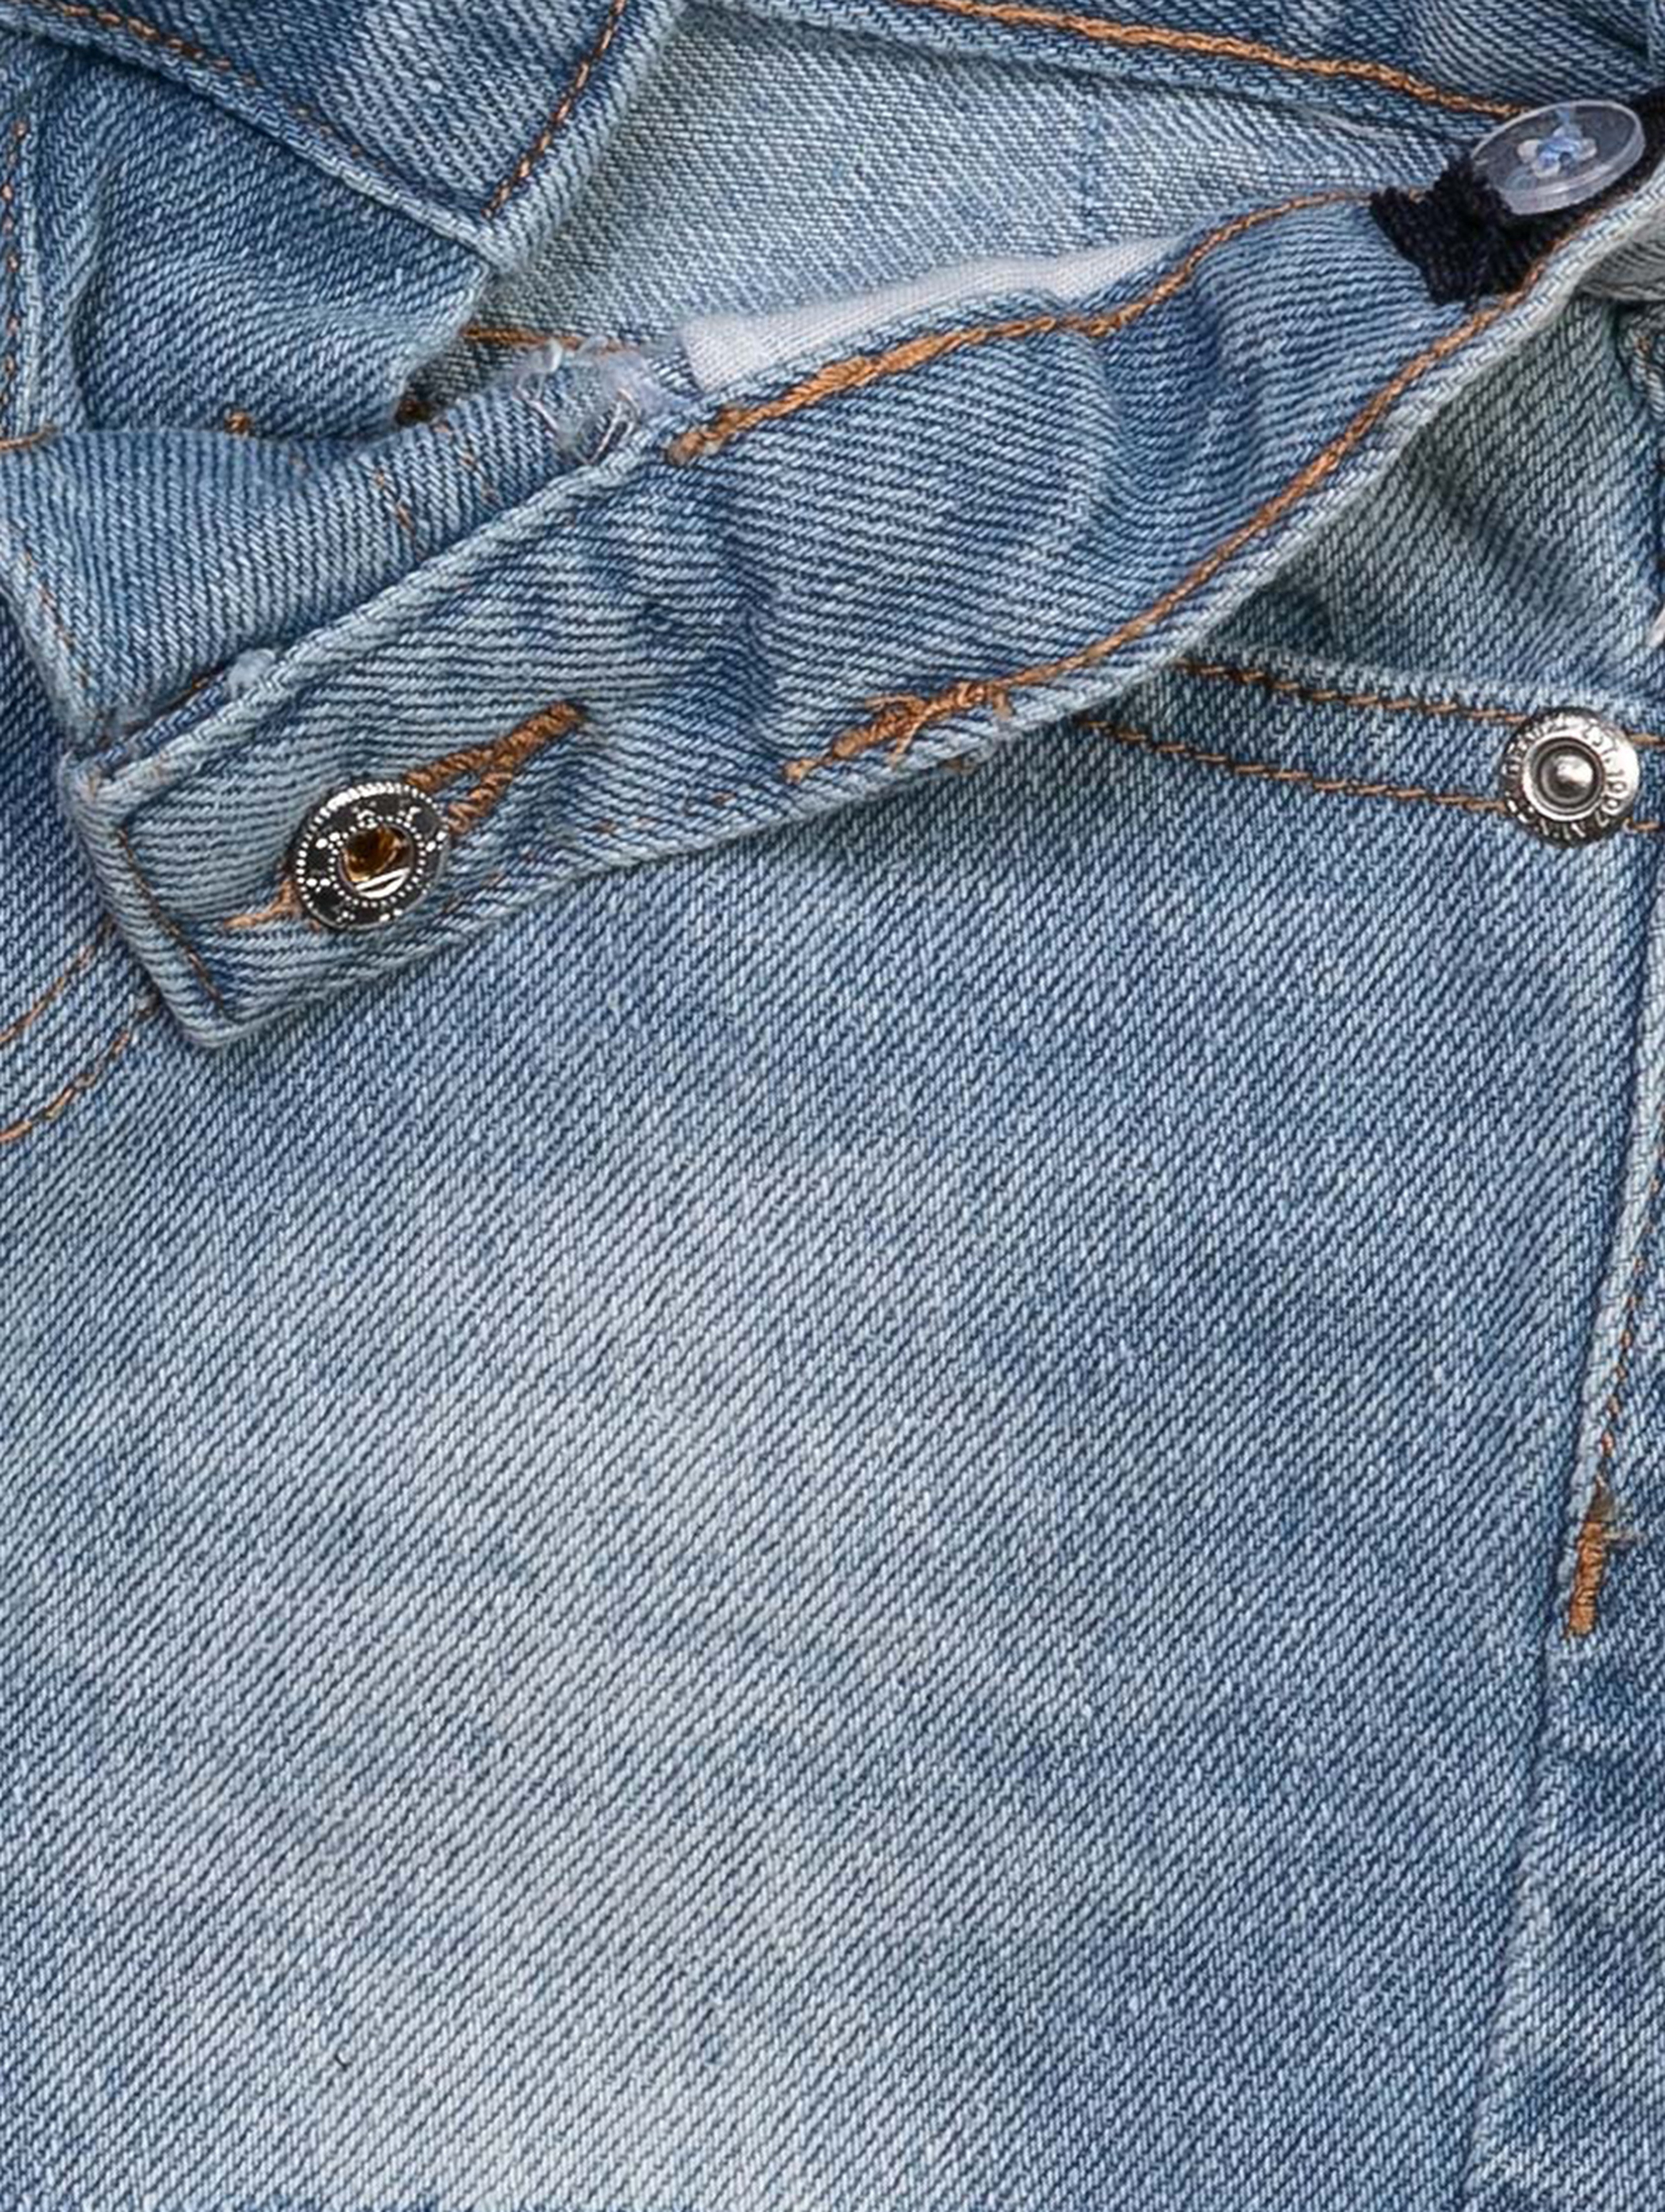 Jeansowe krótkie spodenki z kieszeniami dla dziewczynki